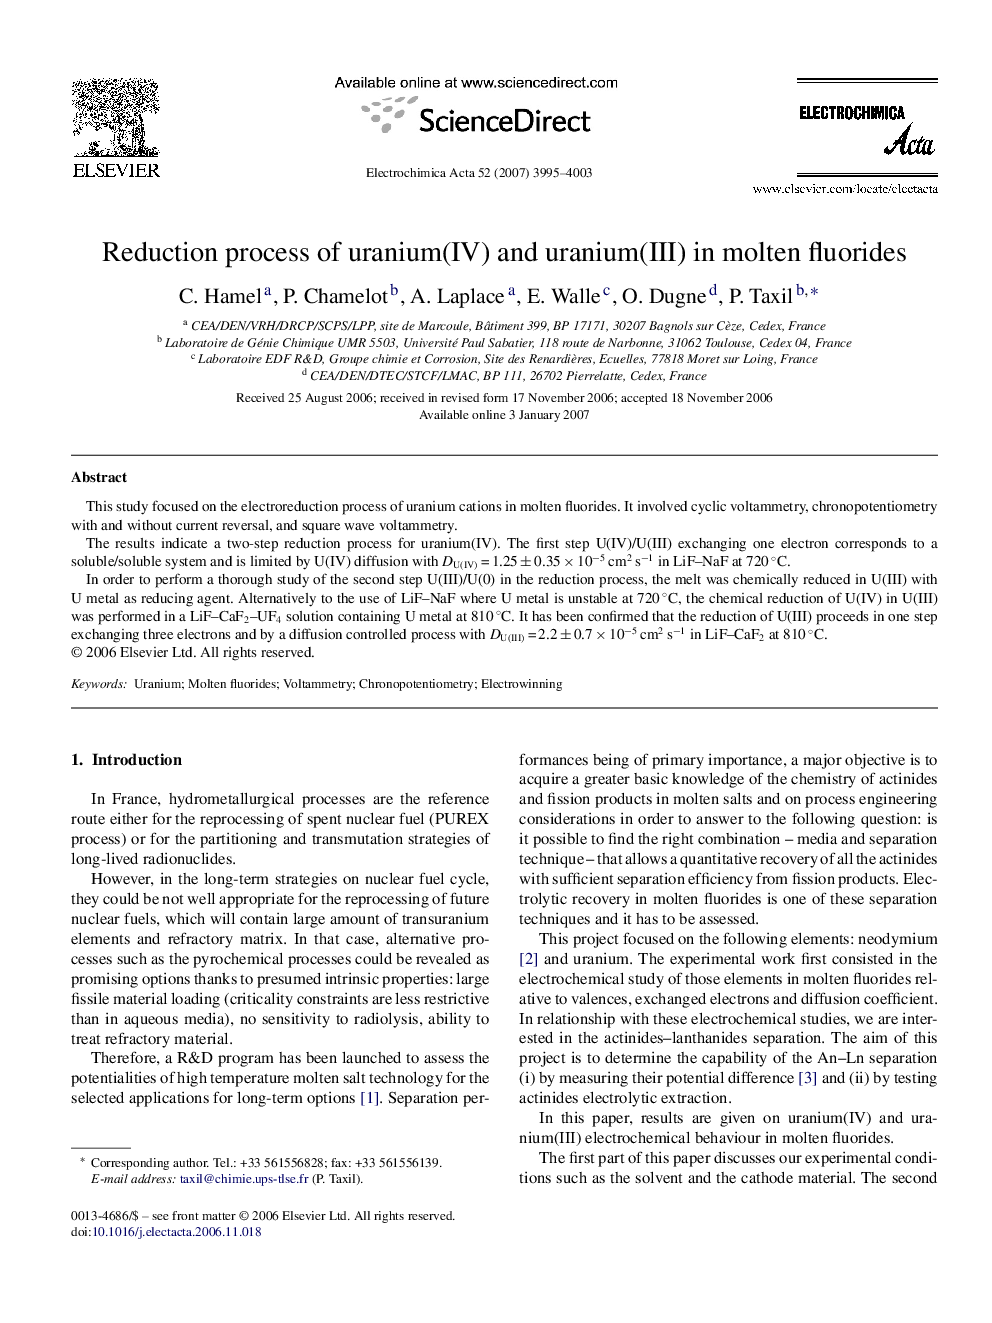 Reduction process of uranium(IV) and uranium(III) in molten fluorides